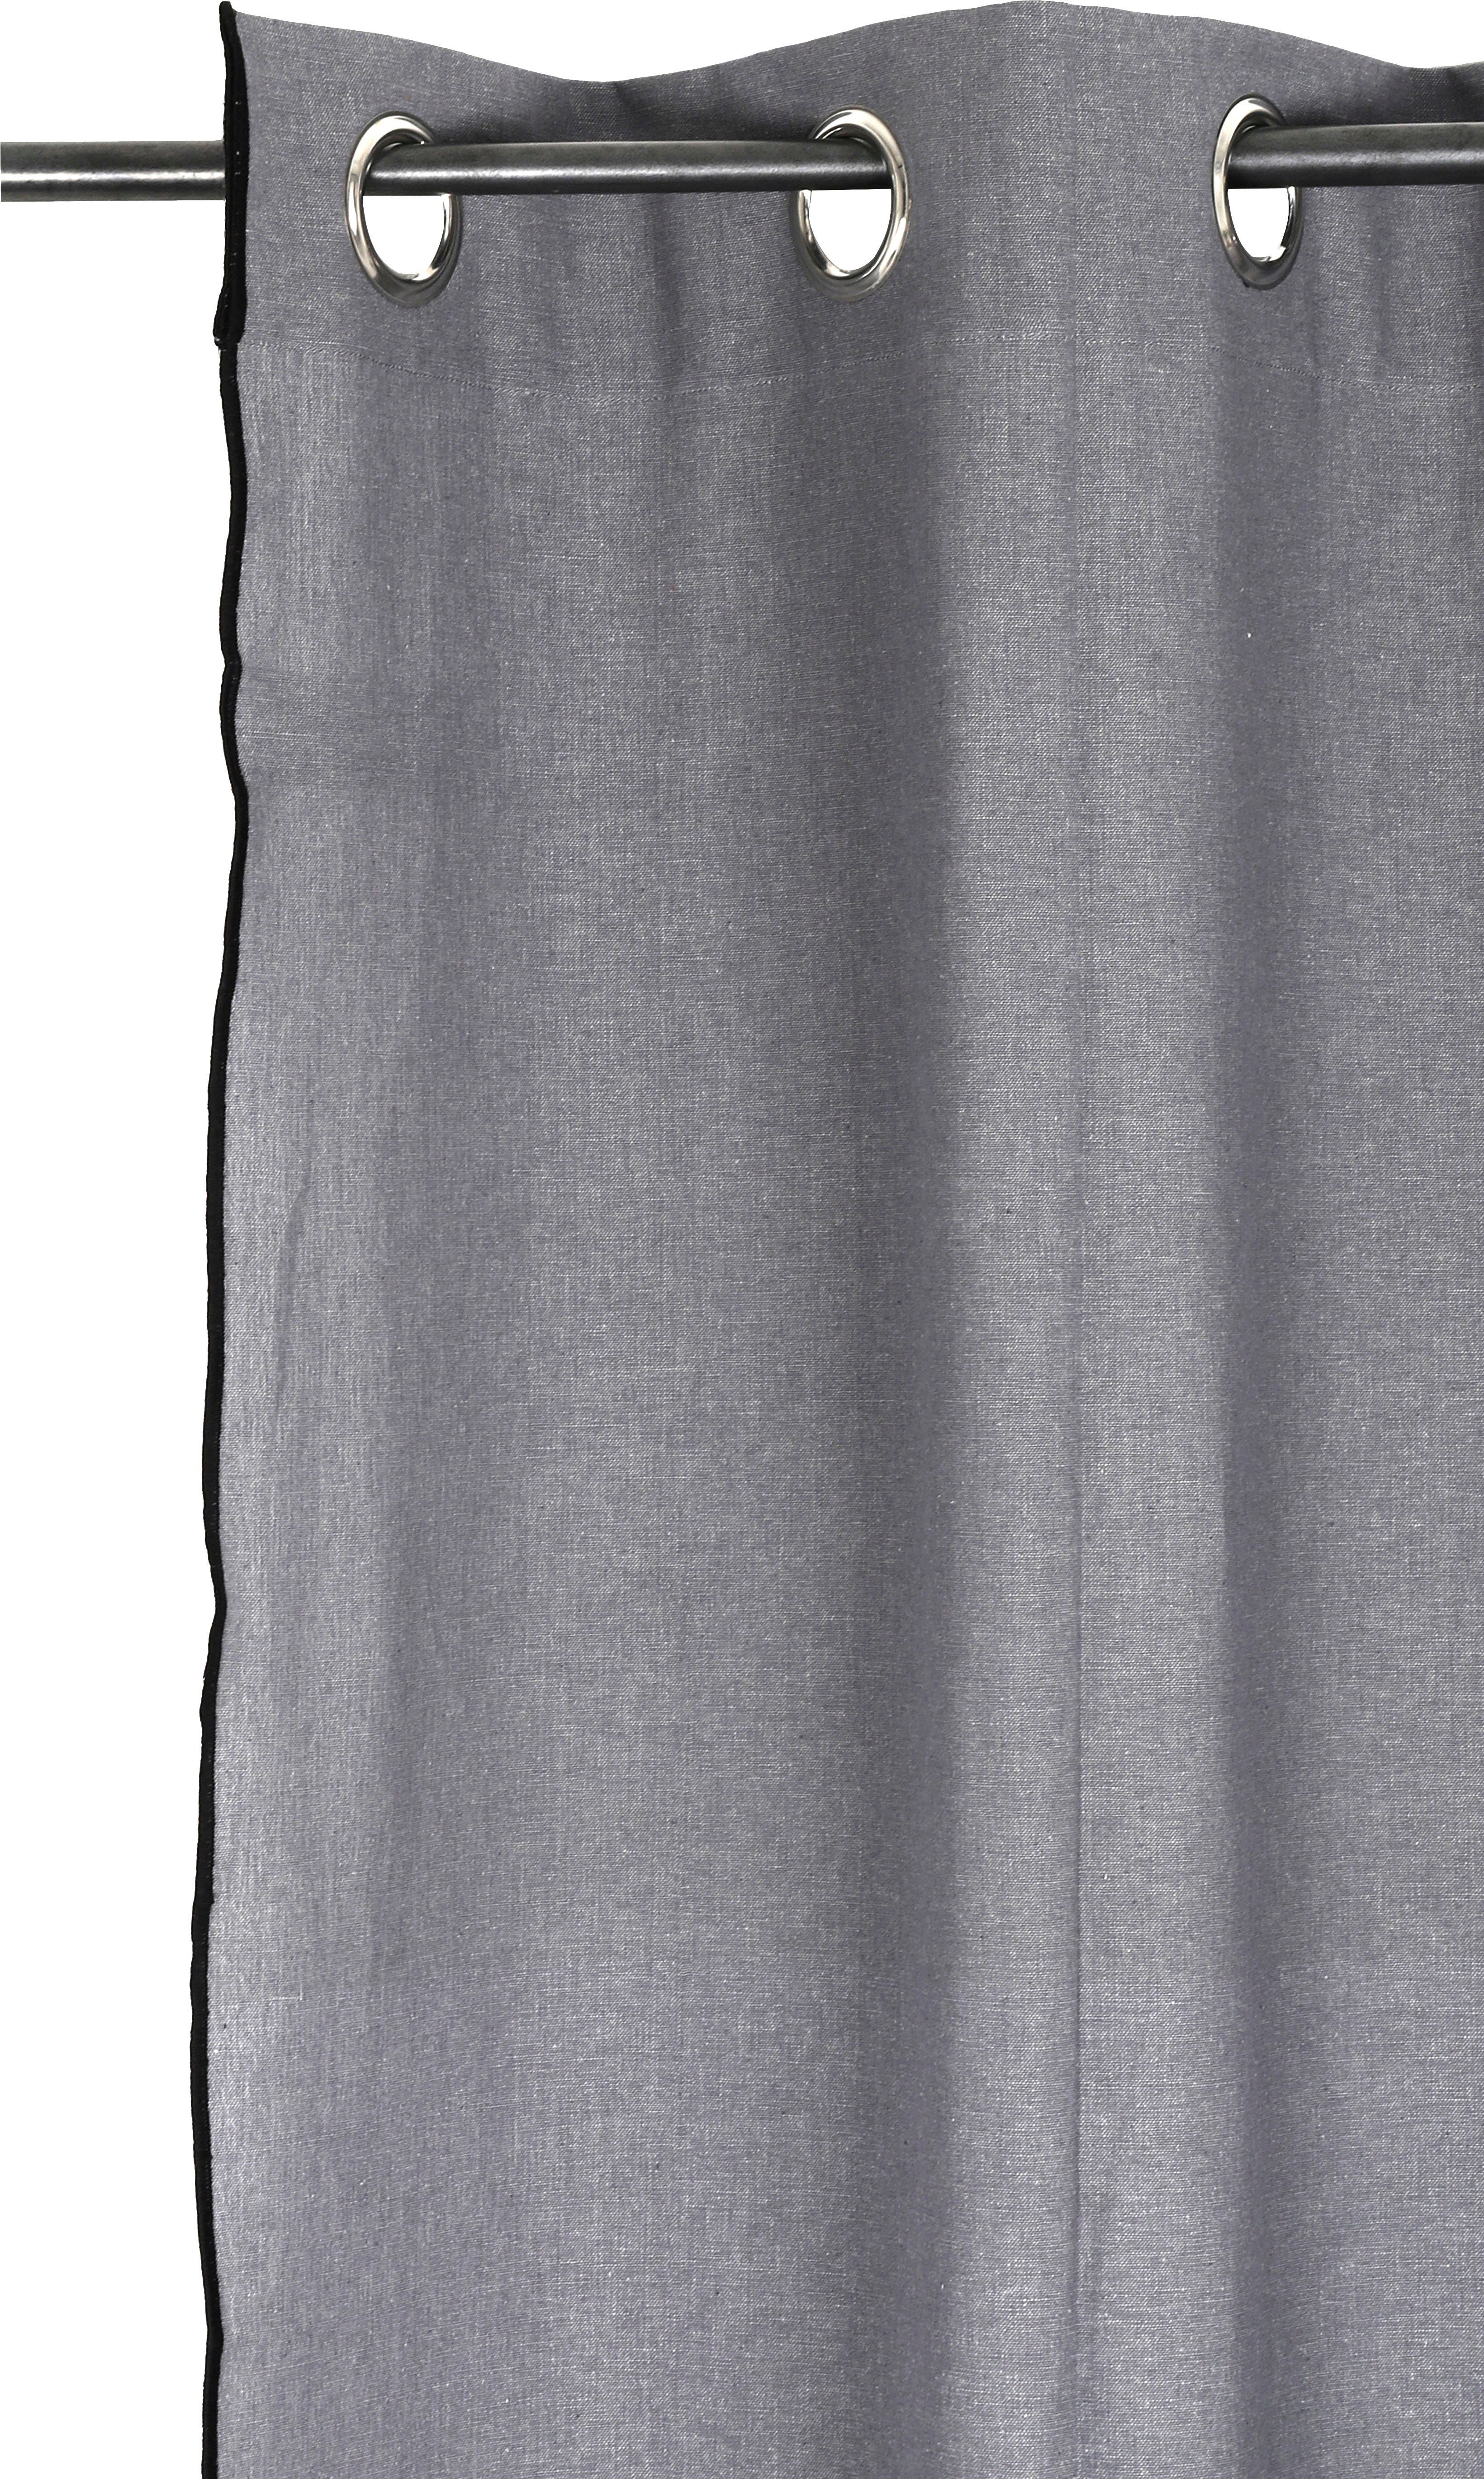 Vorhang Ellen, mit verschiedene Größen andas, schwarzen grau Ösen (1 Unifarben St), Overlocknaht, blickdicht,